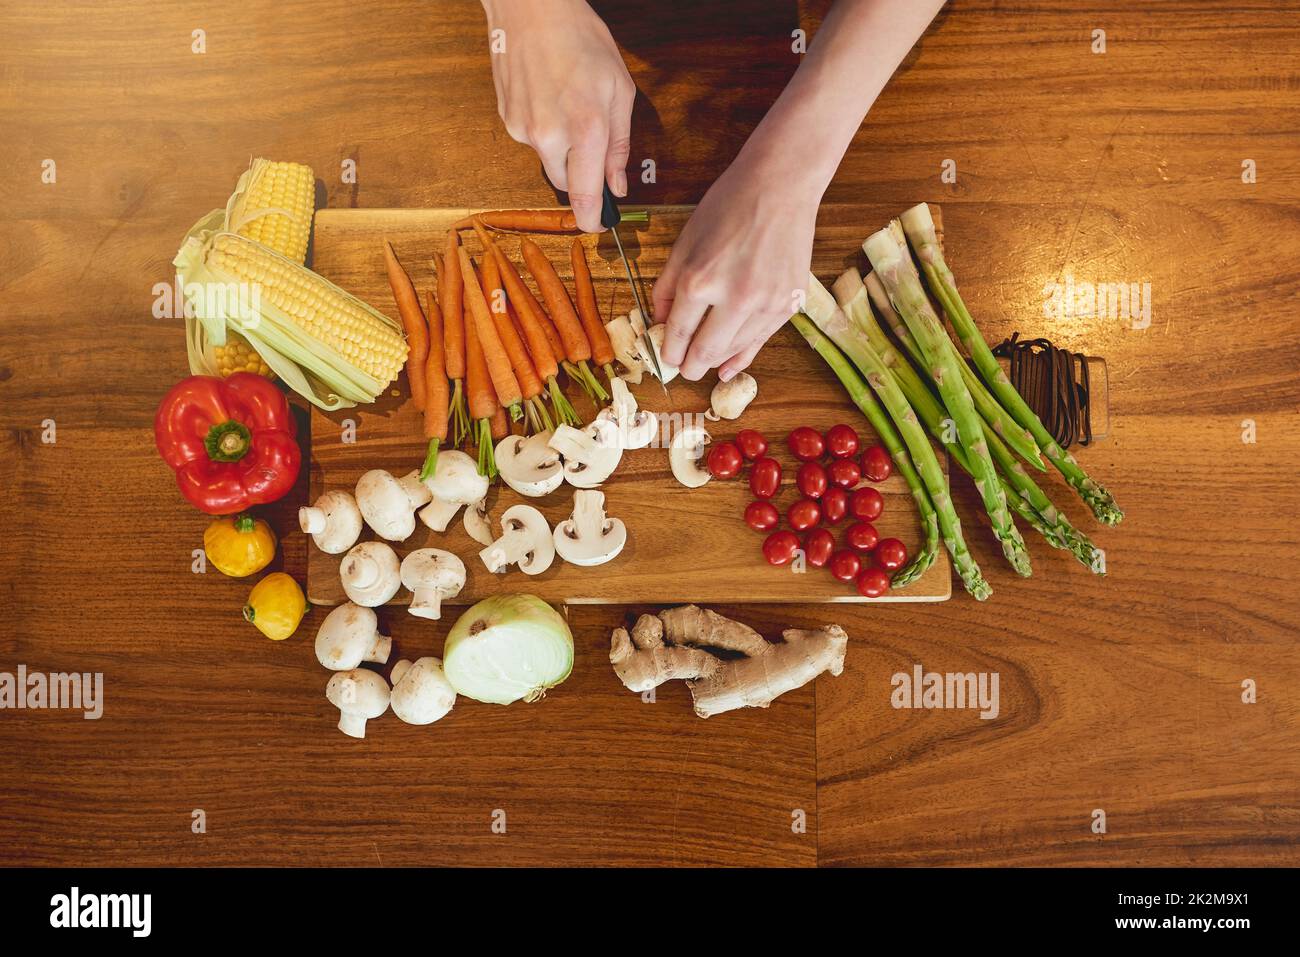 Mangiare verde, mangiare pulito. Colpo ad angolo alto di una donna che taglia una varietà di verdure sane su un tagliere. Foto Stock